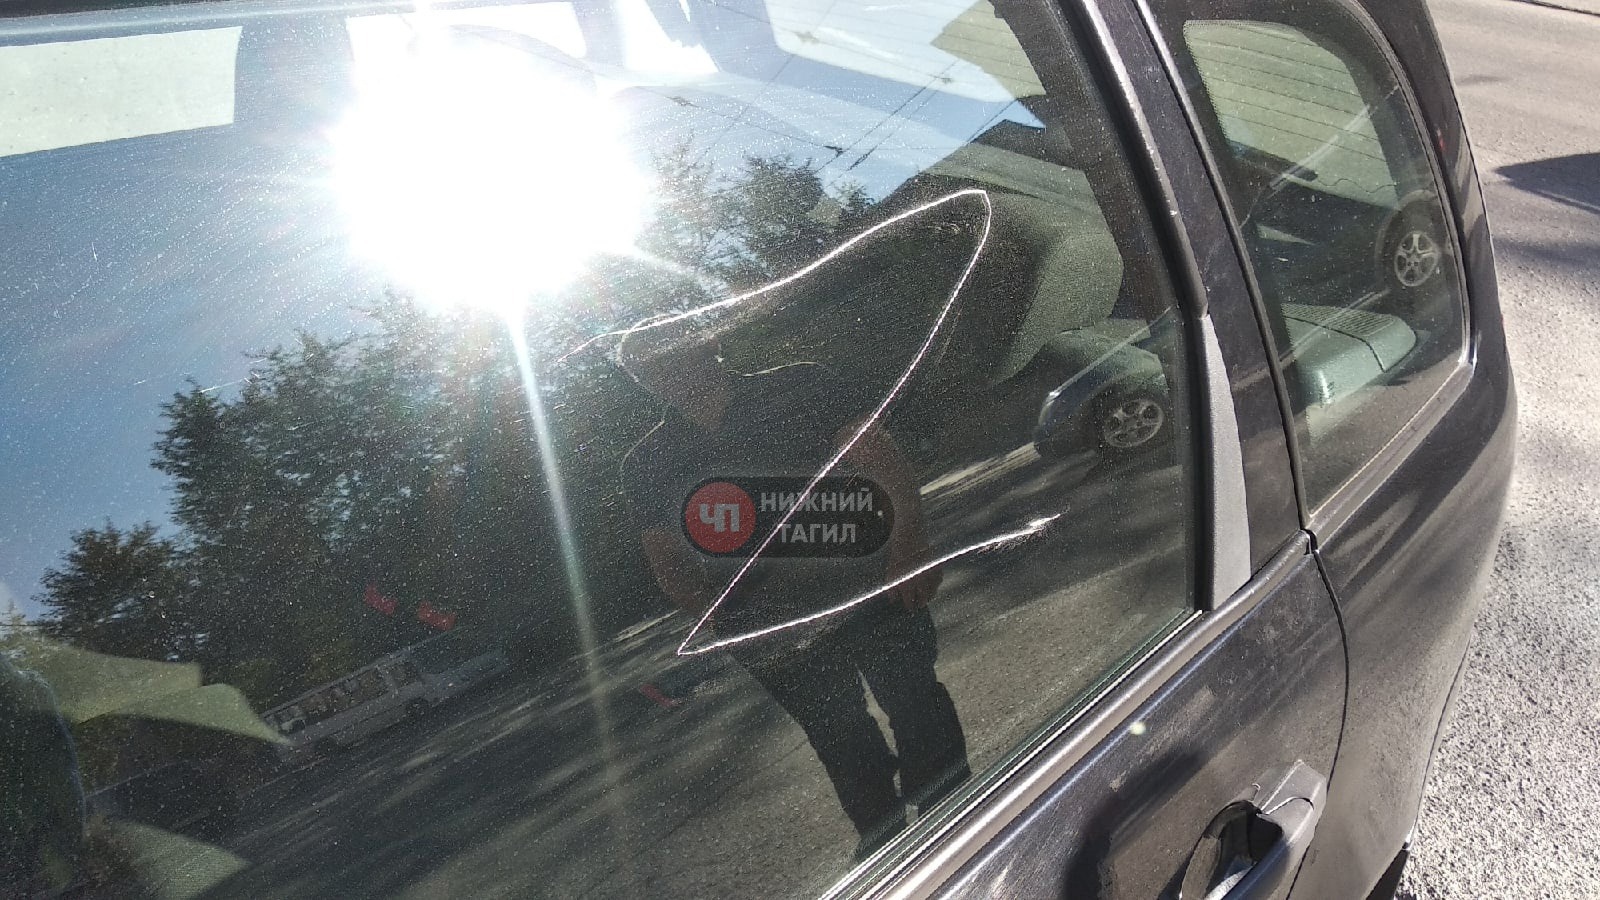 Хулиганы испортили изображенный на автомобиле символ на Вагонке в Нижнем Тагиле